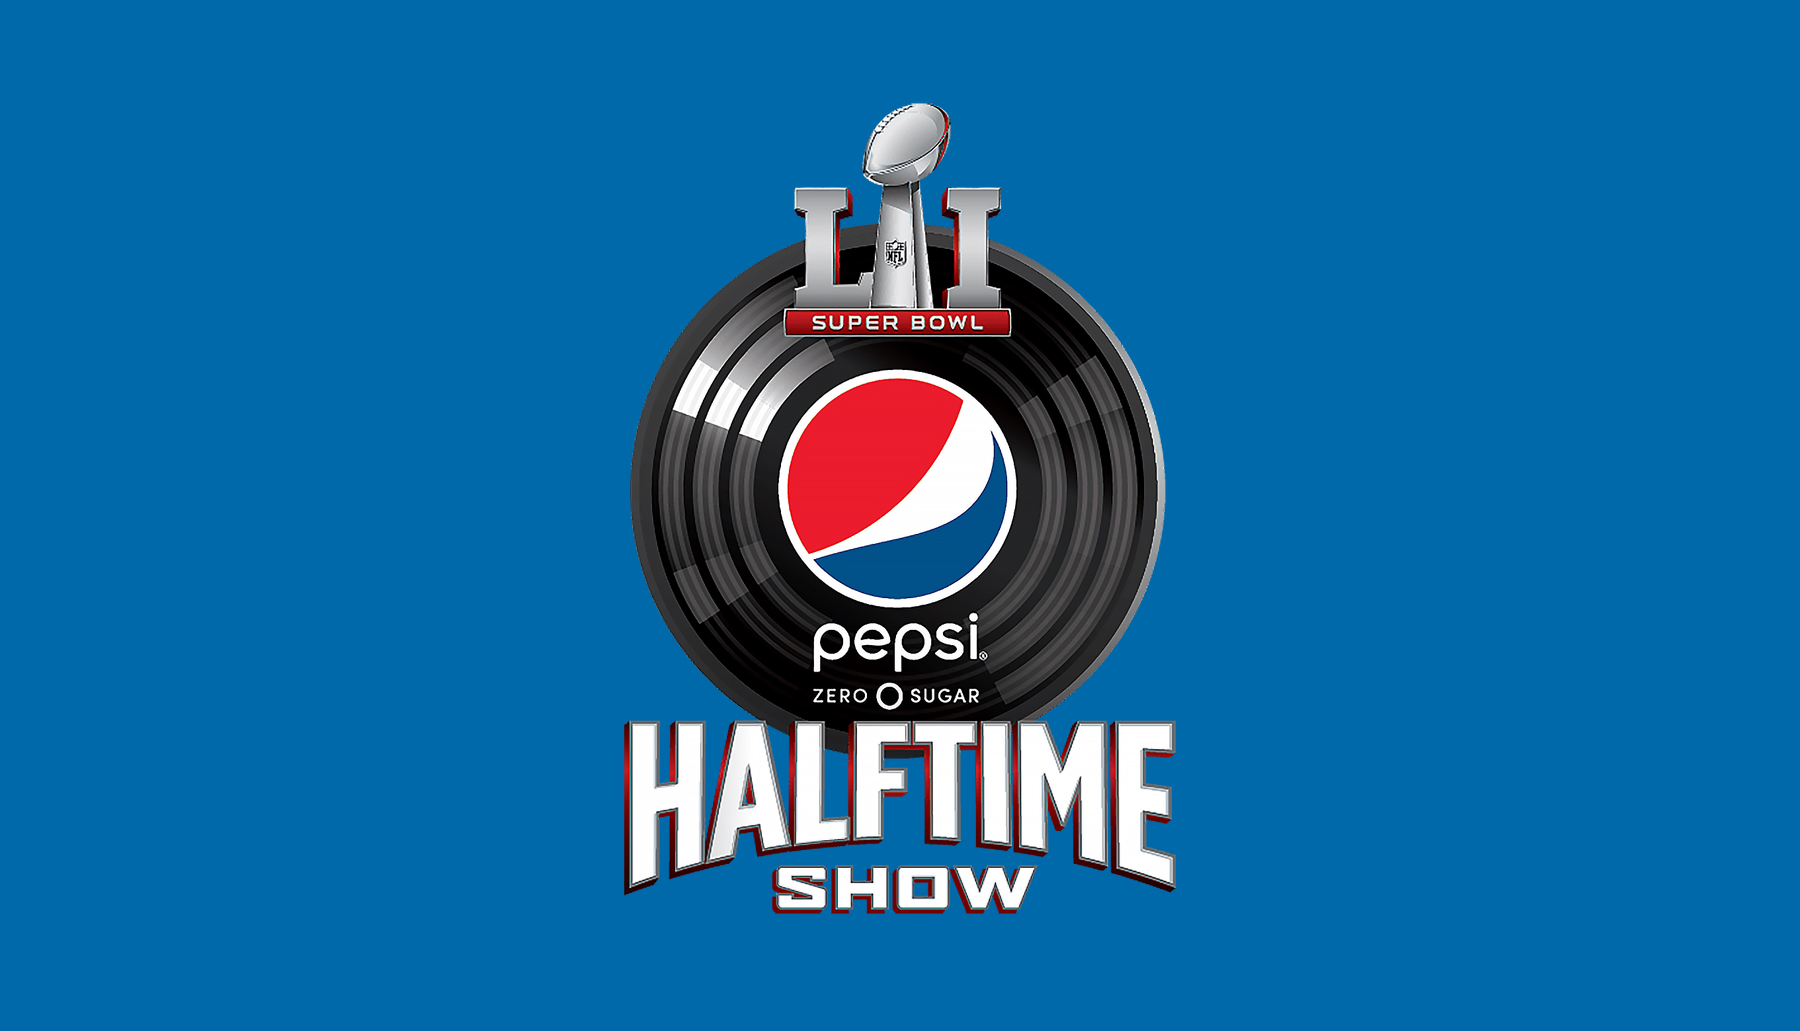 Pepsi patrocinio medio tiempo Super Bowl